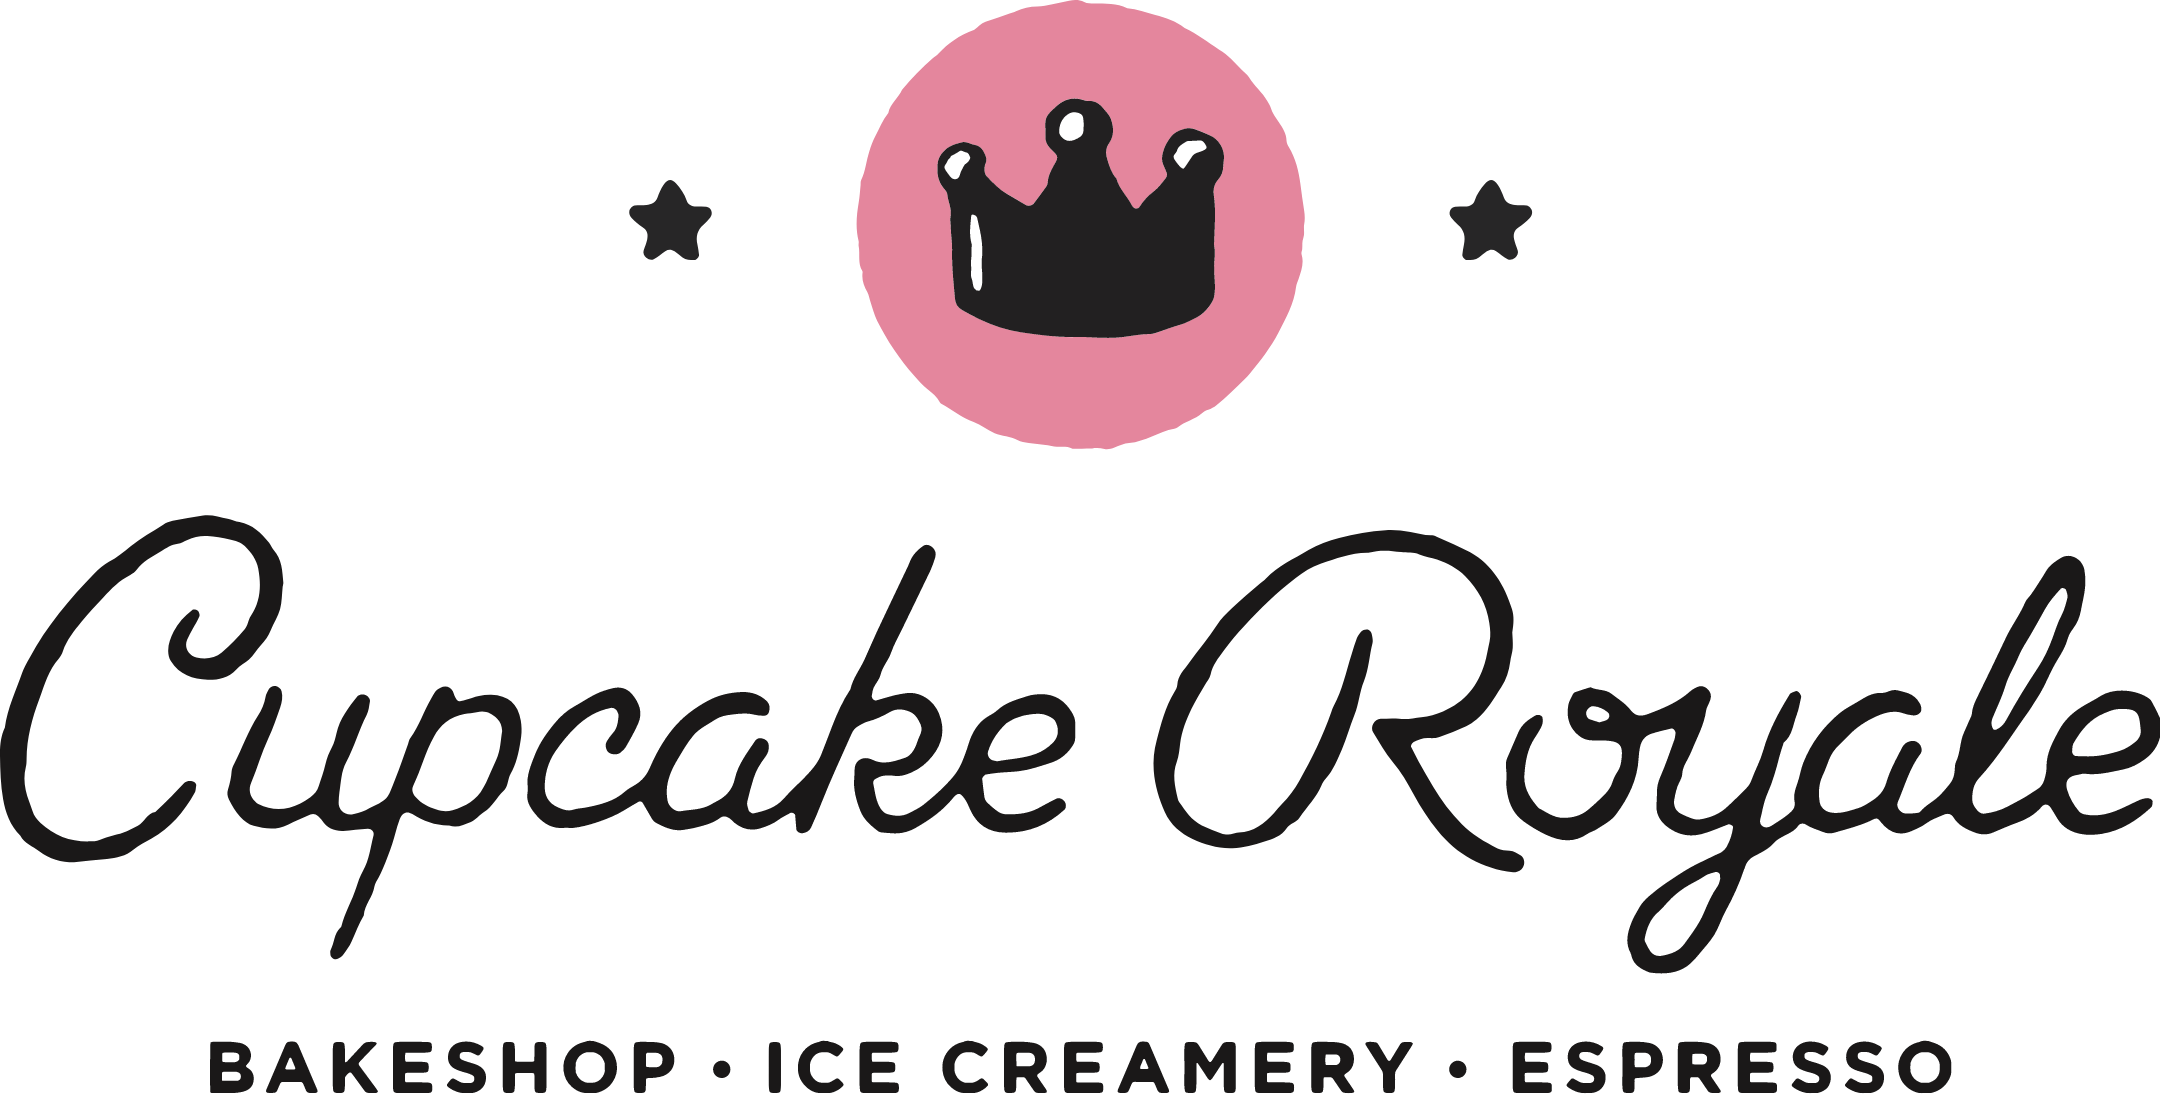 Cupcake Royale Logo